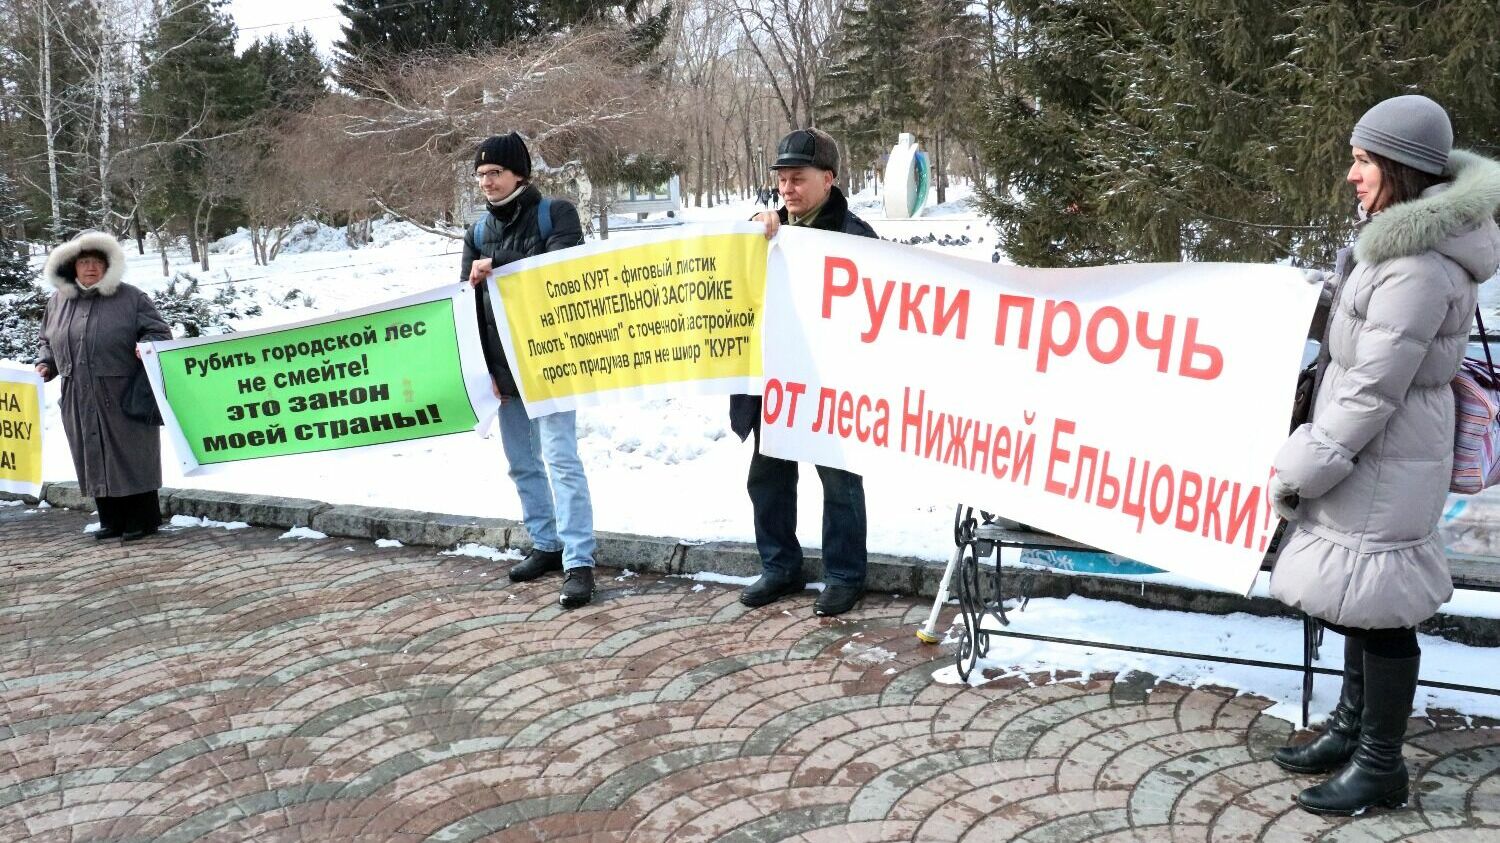 Жители Нижней Ельцовки уже несколько лет протестуют против застройки микрорайона